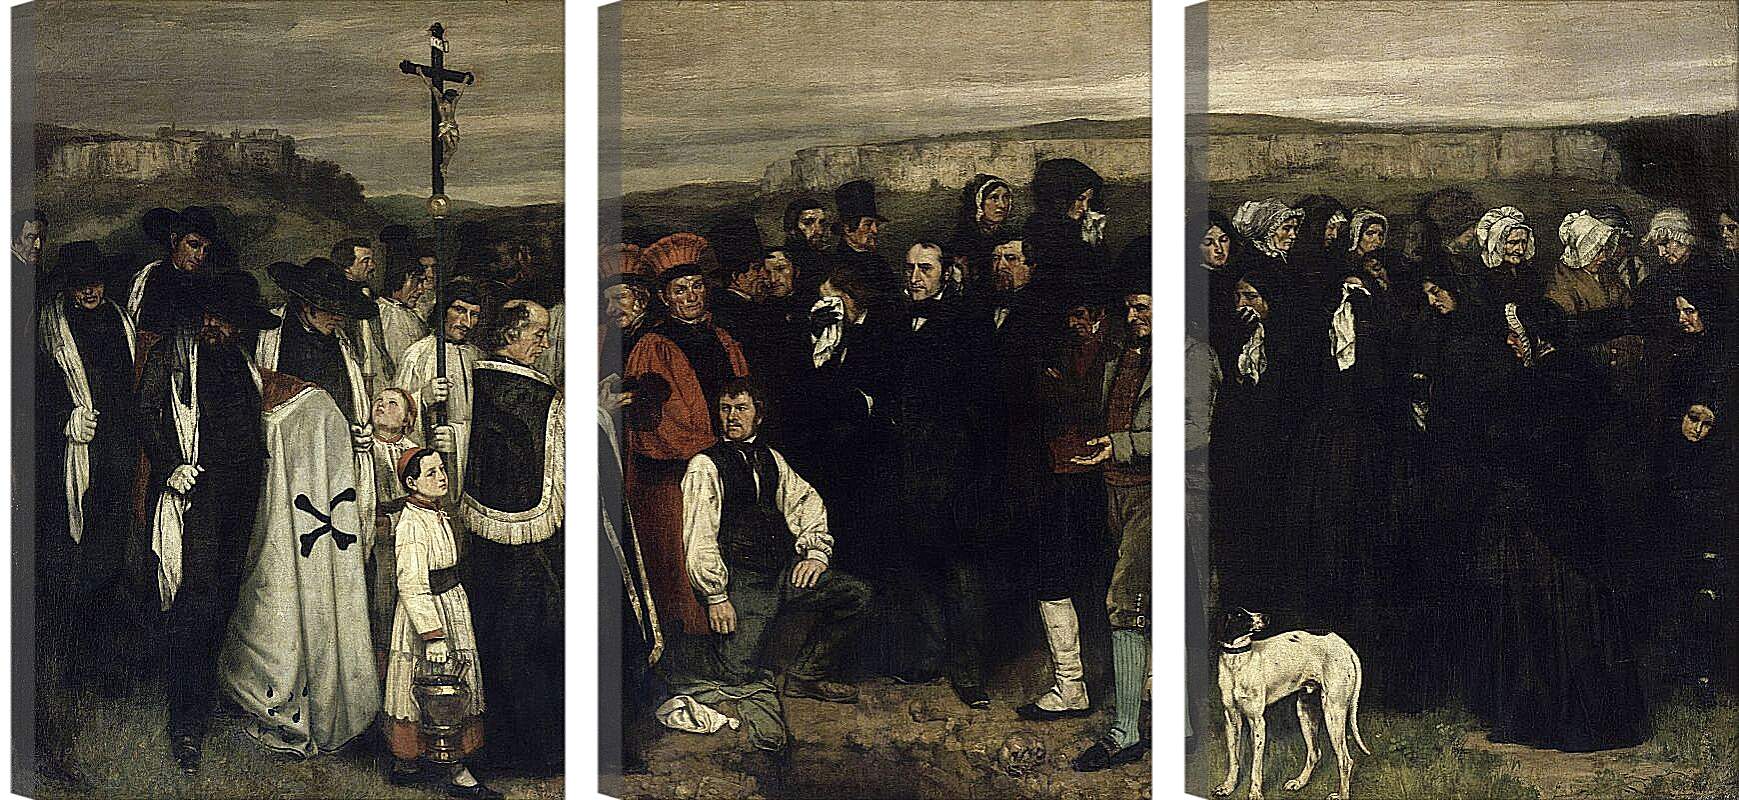 Гюстав Курбе «похороны в Орнане» (1849-1850). Погребение в Орнане картина.